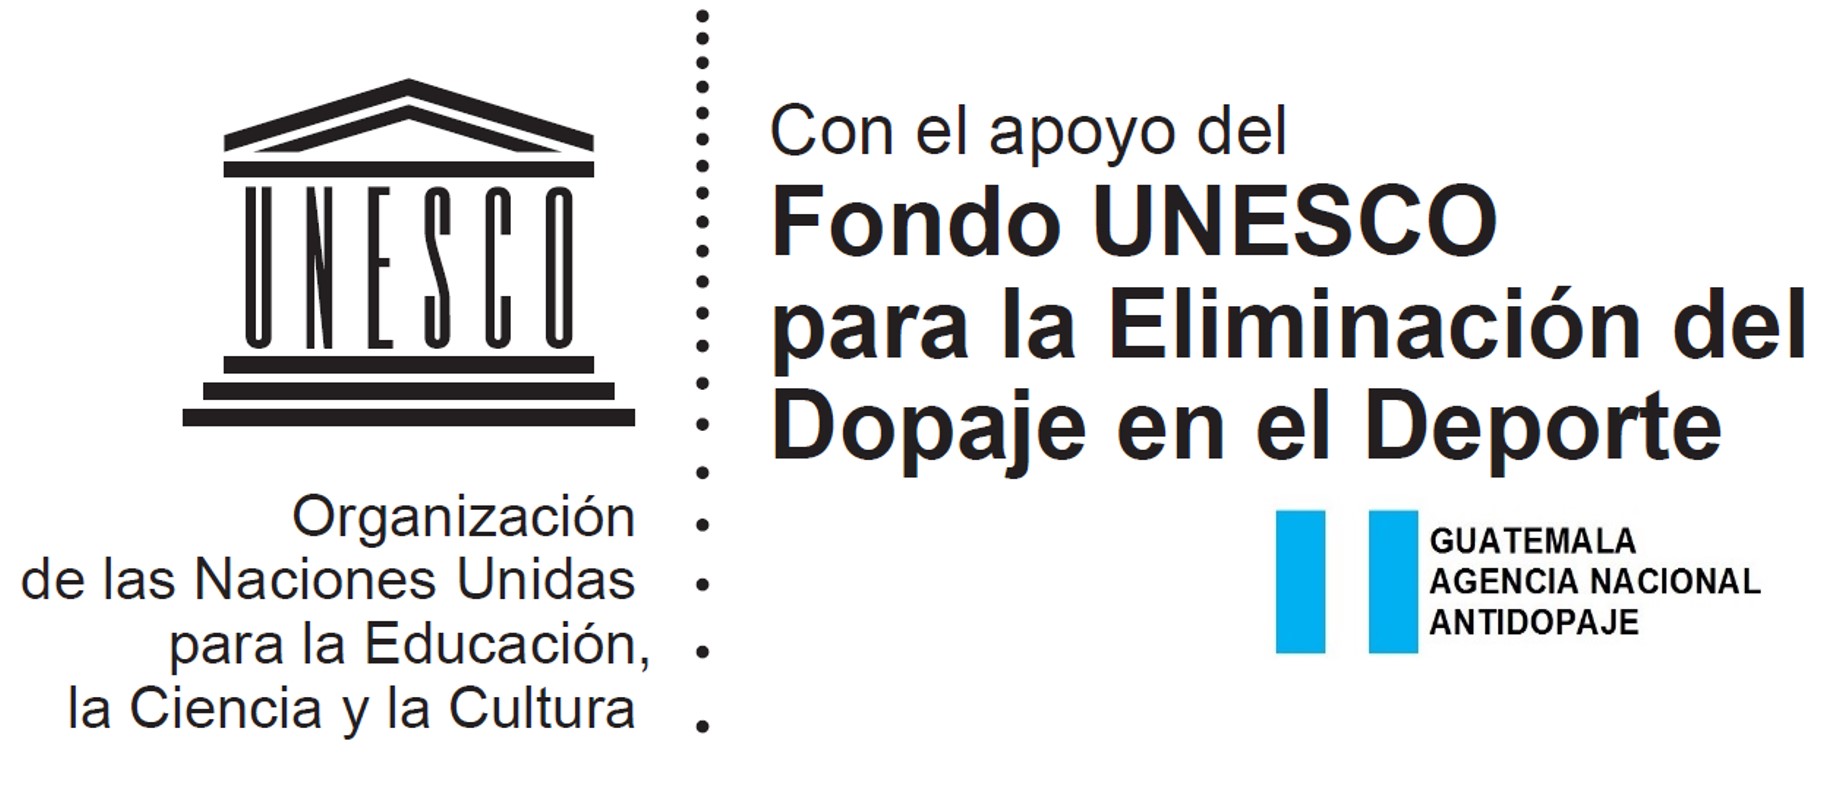 TALLER DE PREVENCIÓN Y EDUCACIÓN ANTIDOPAJE -UNESCO-